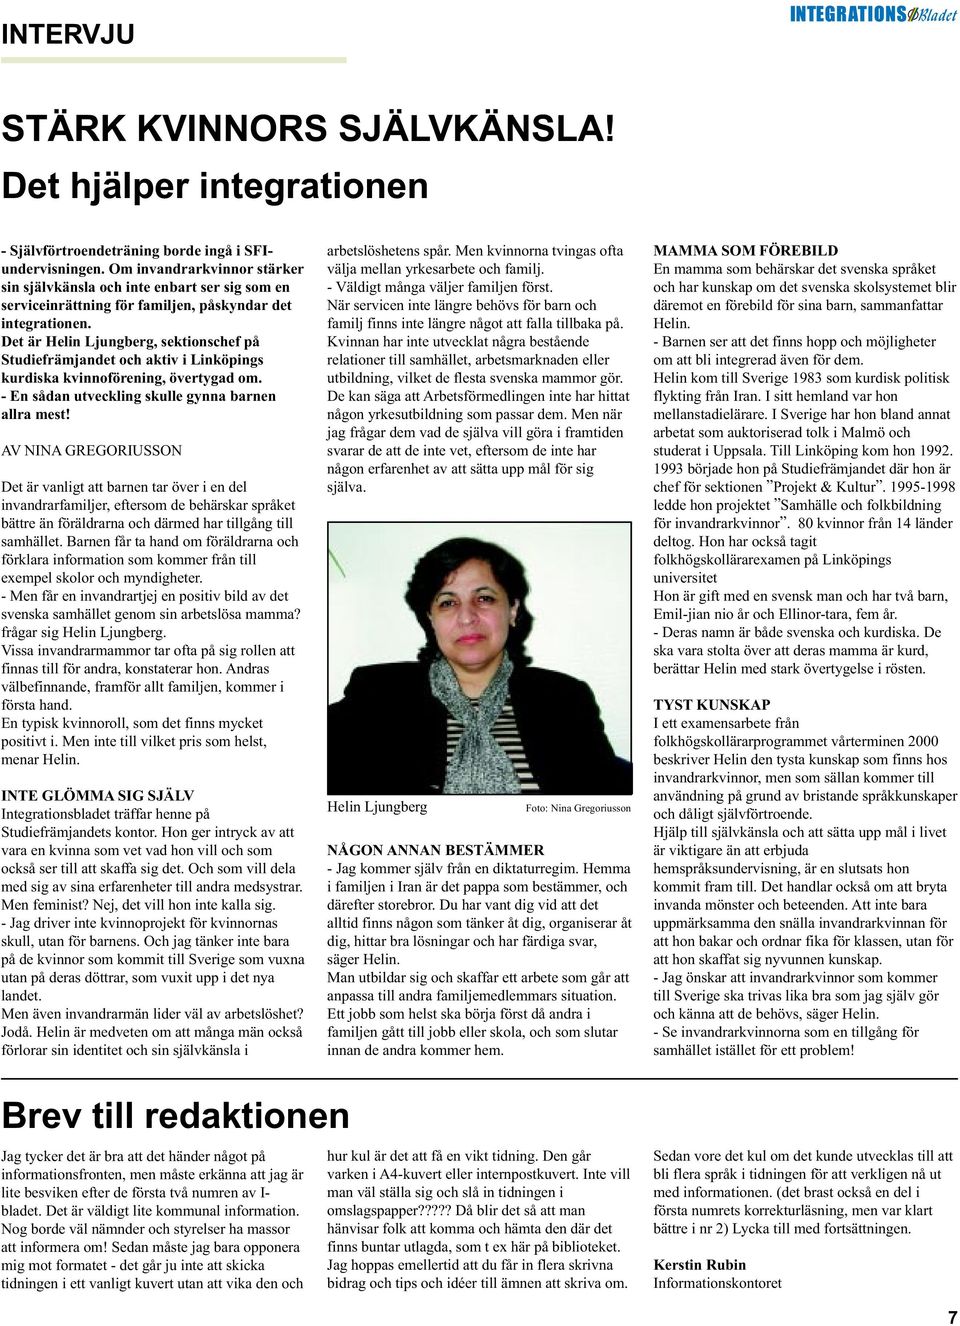 Det är Helin Ljungberg, sektionschef på Studiefrämjandet och aktiv i Linköpings kurdiska kvinnoförening, övertygad om. - En sådan utveckling skulle gynna barnen allra mest!